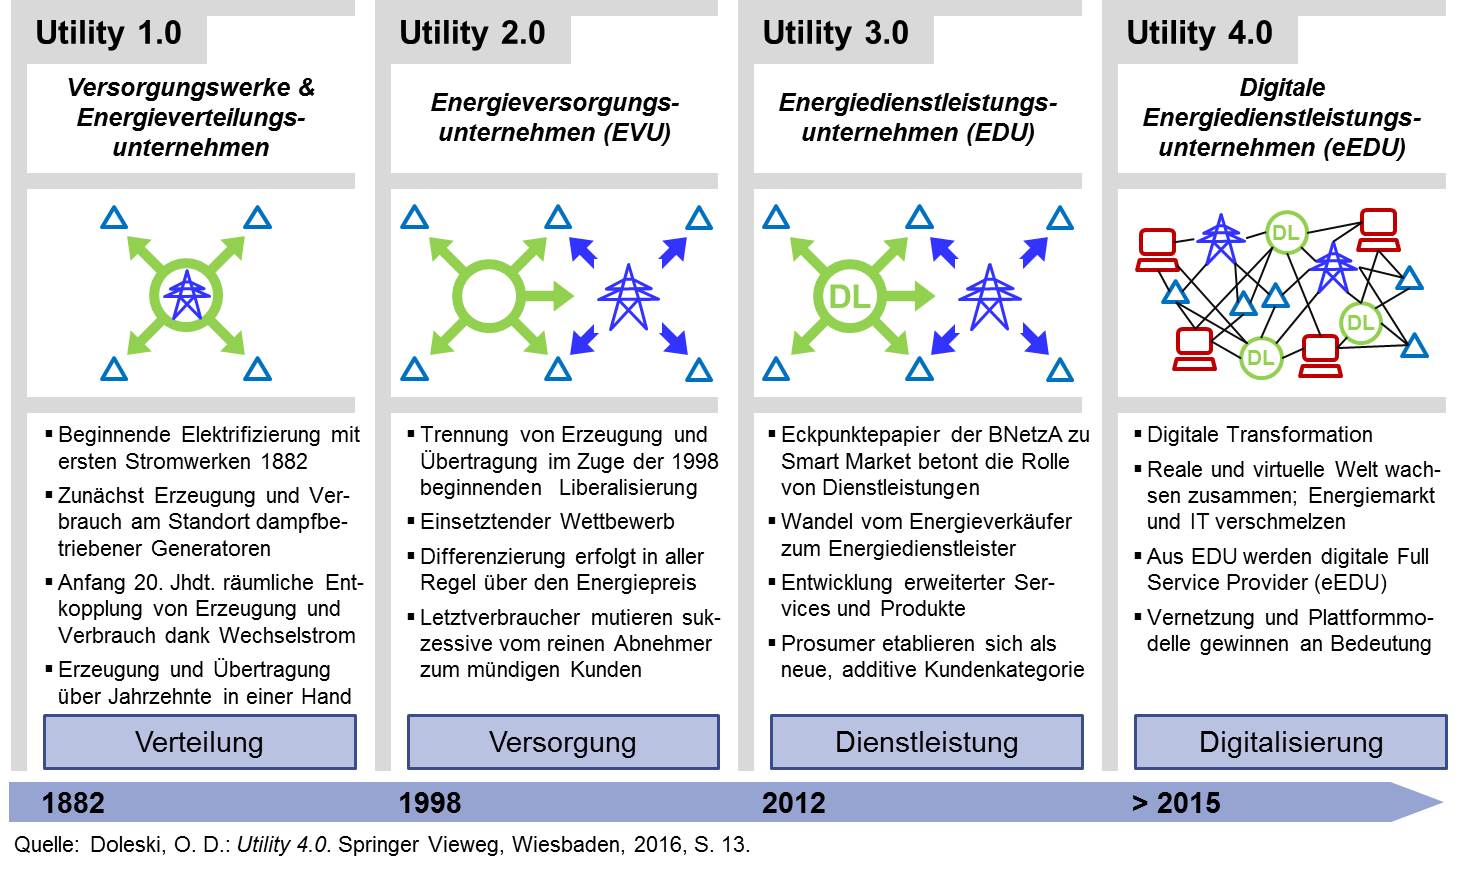 Utility 4.0 - Transformation vom Energieverteiler zum digitalen Energiedienstleister